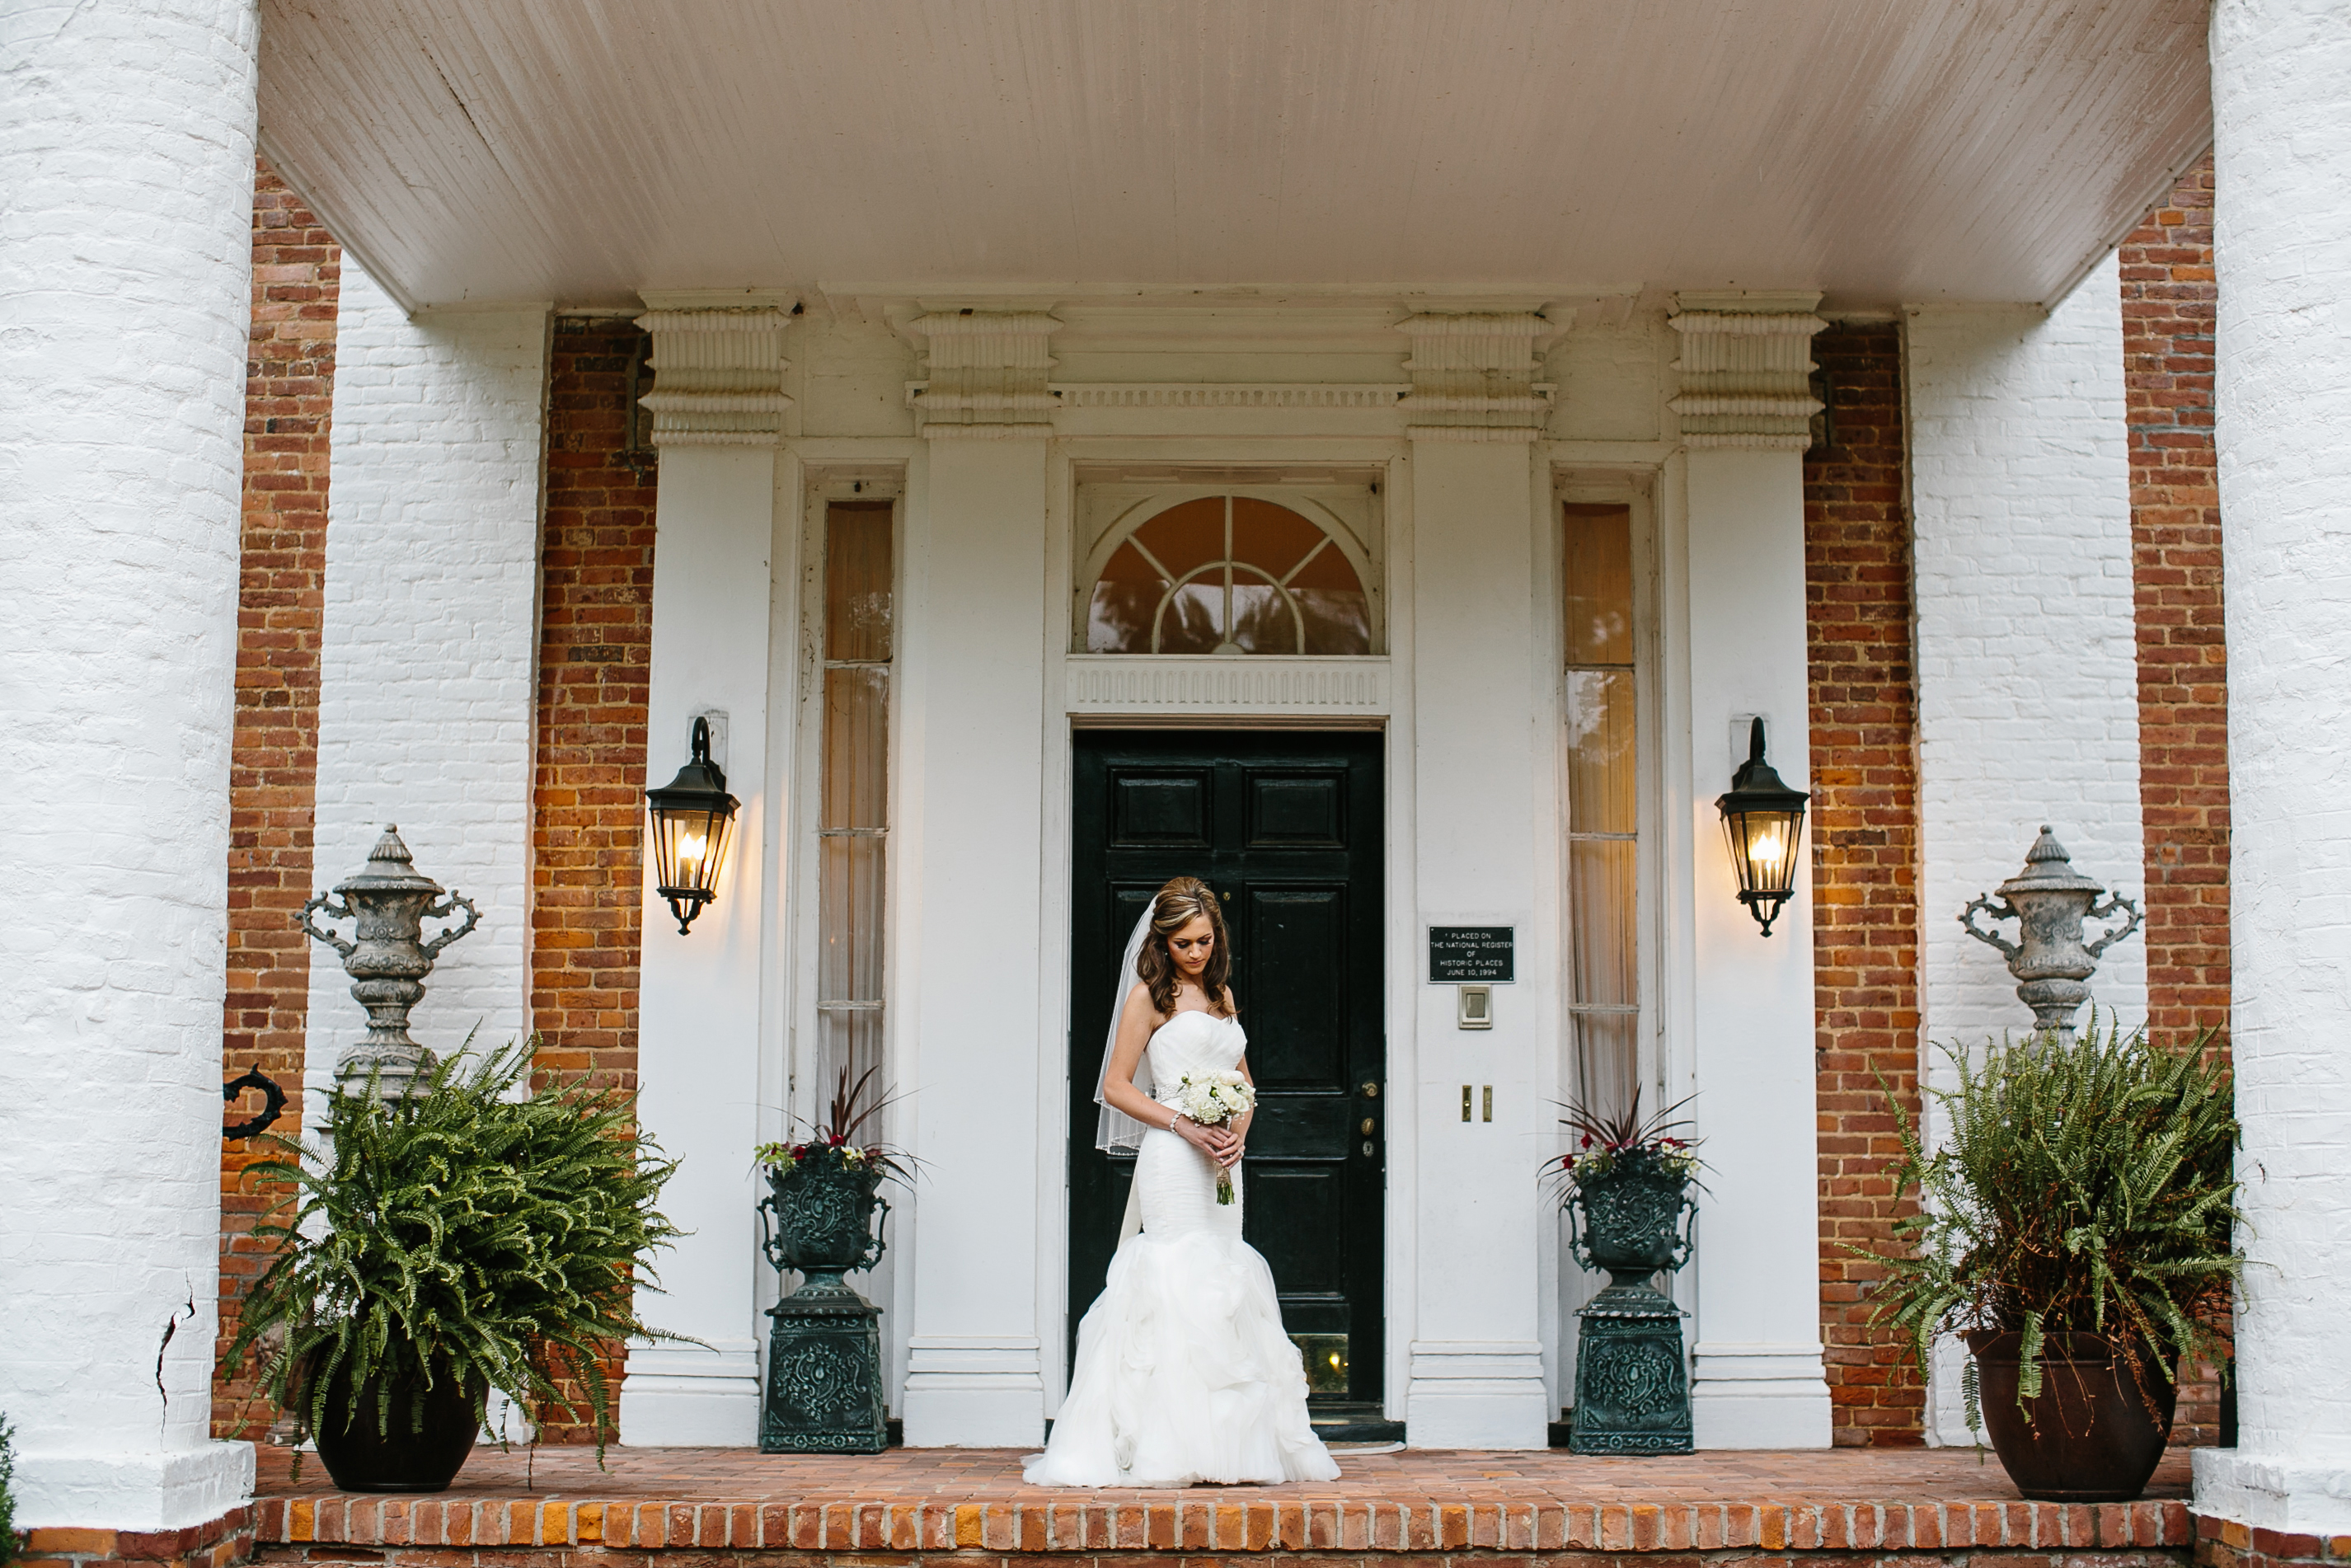 Cedar Hall Tennessee wedding venue wedding photography by Kelly Ginn